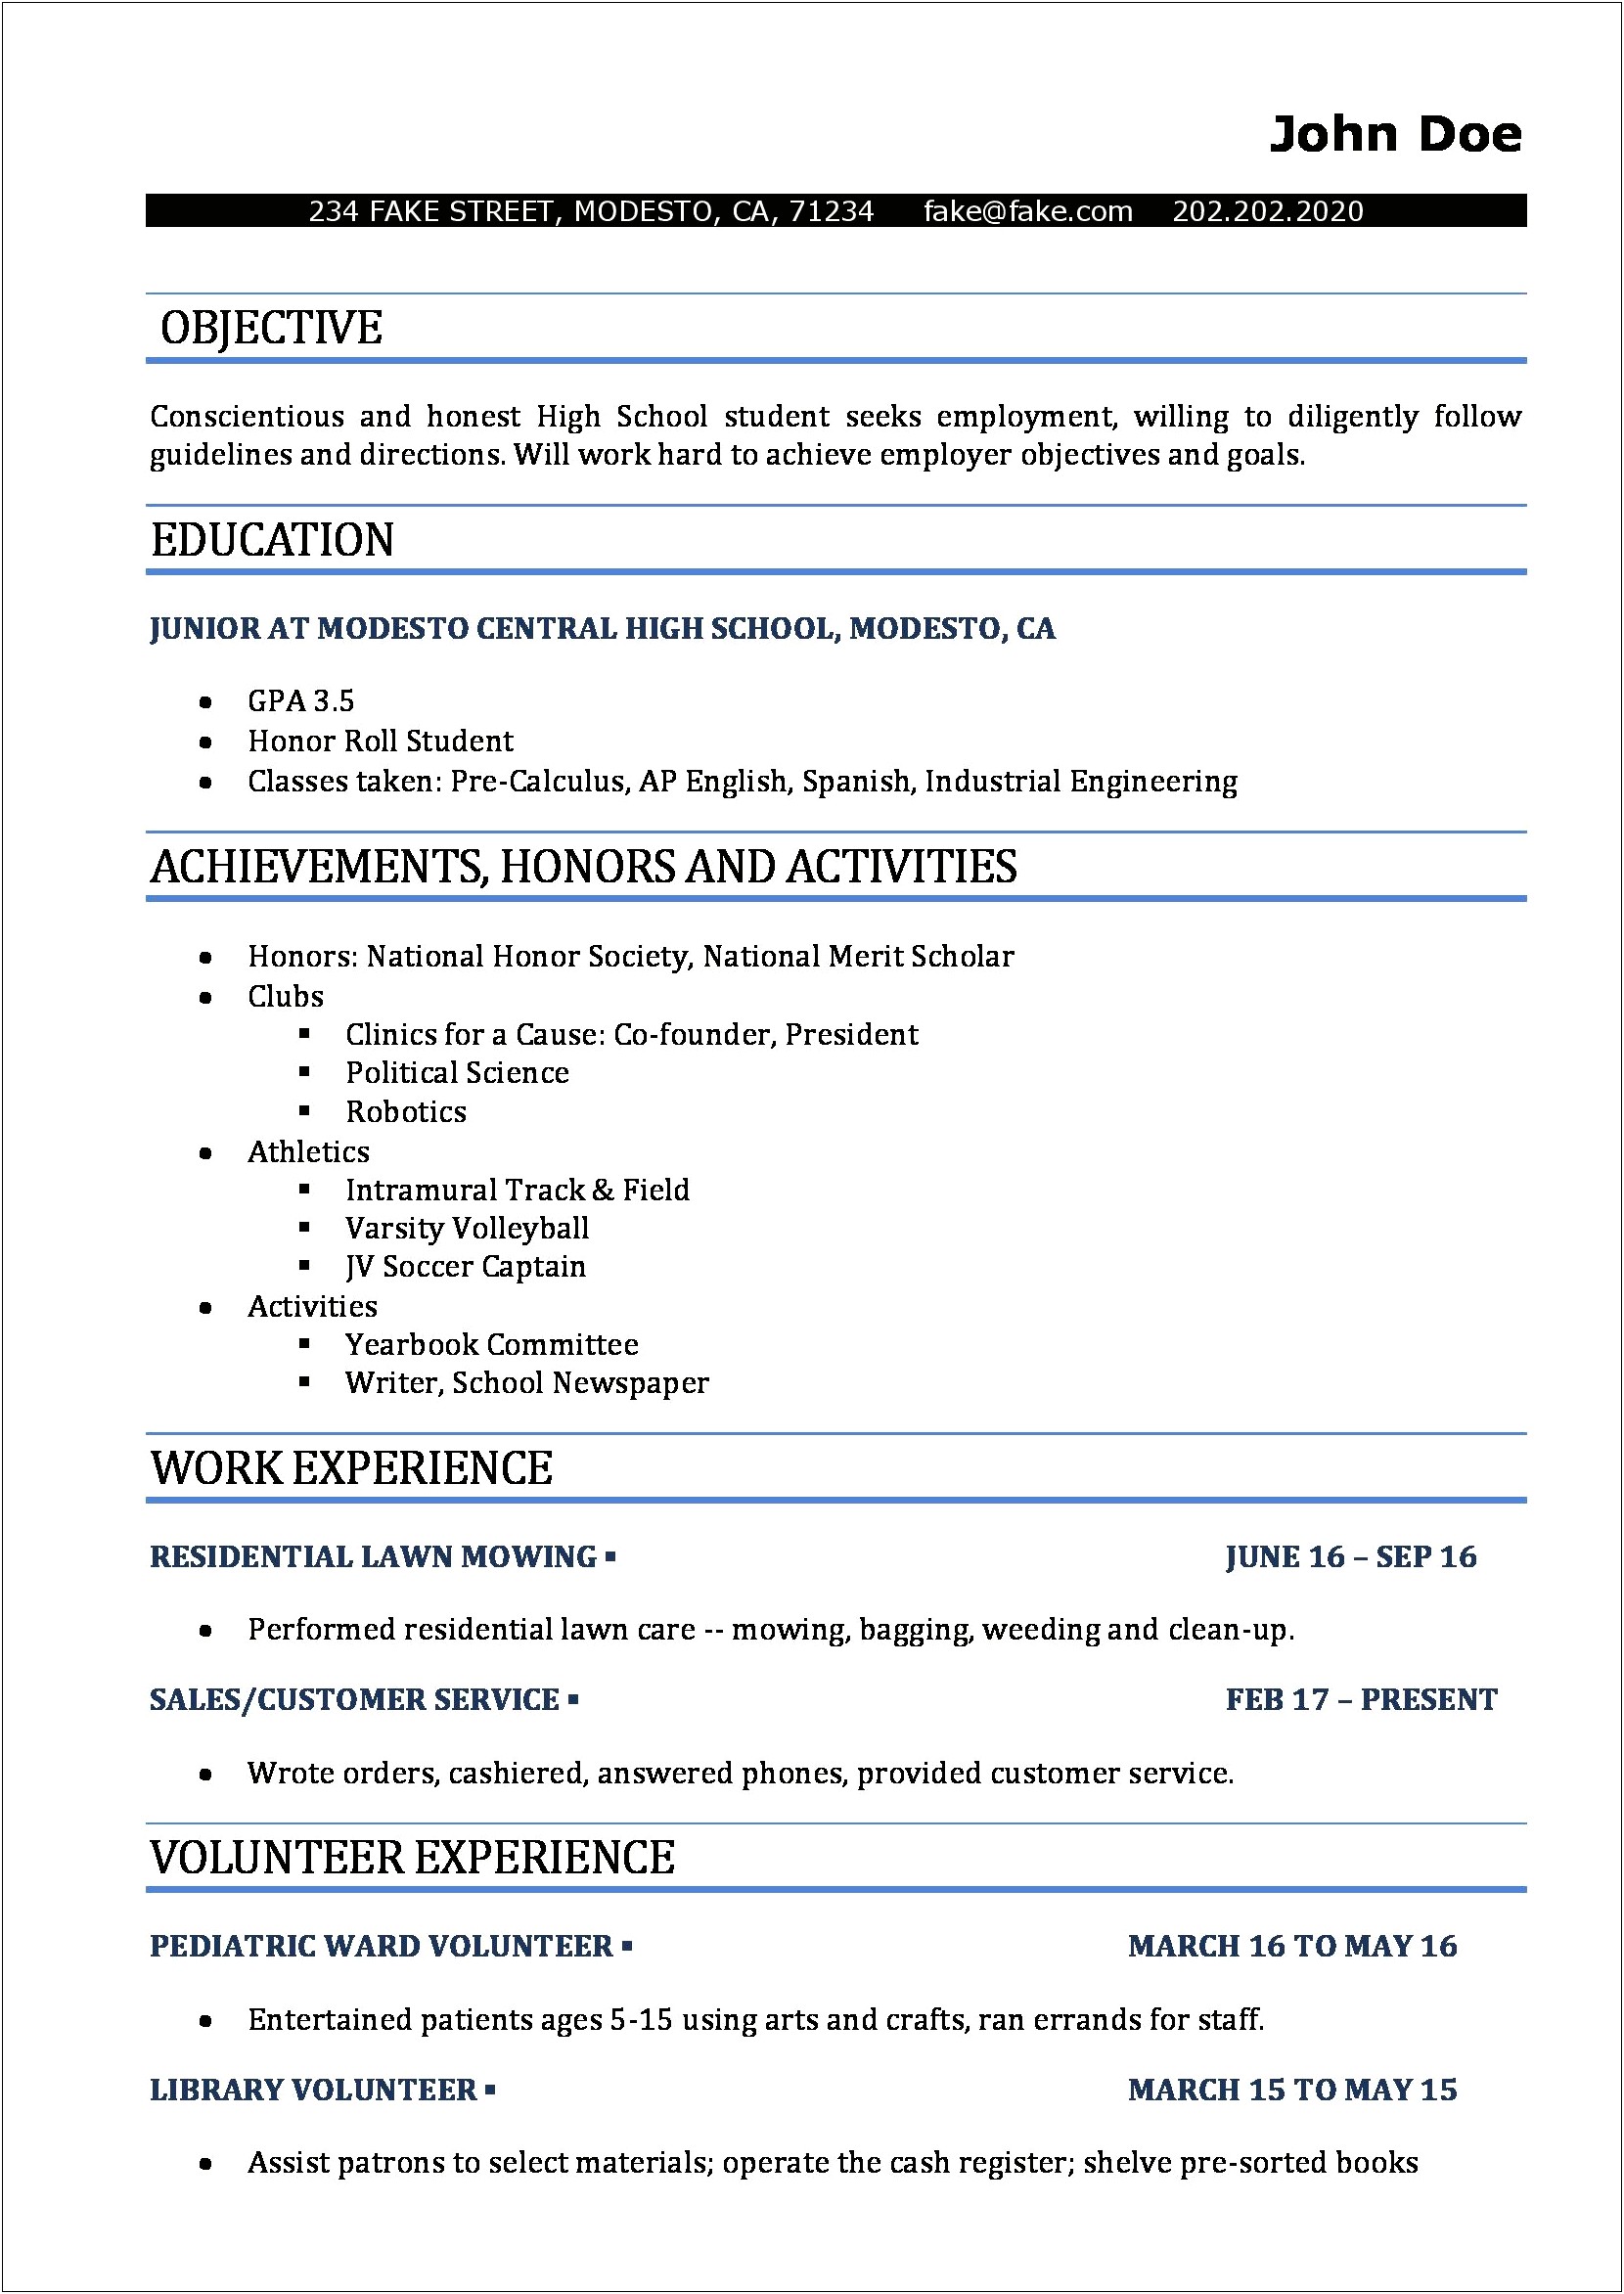 Resume Format For High School Junior Volunteers